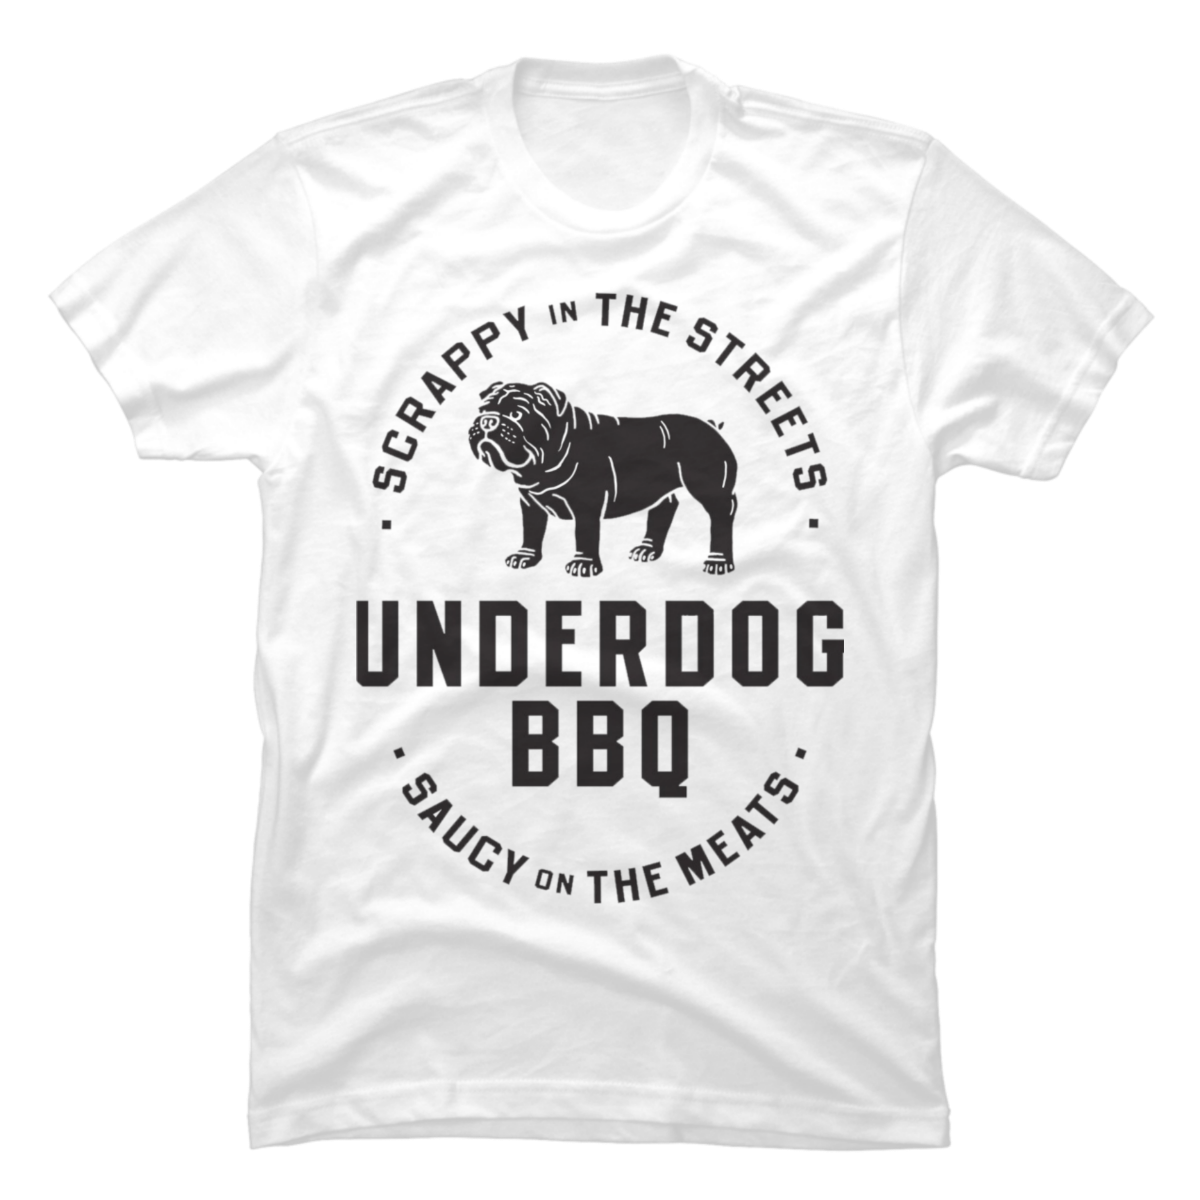 underdog shirt